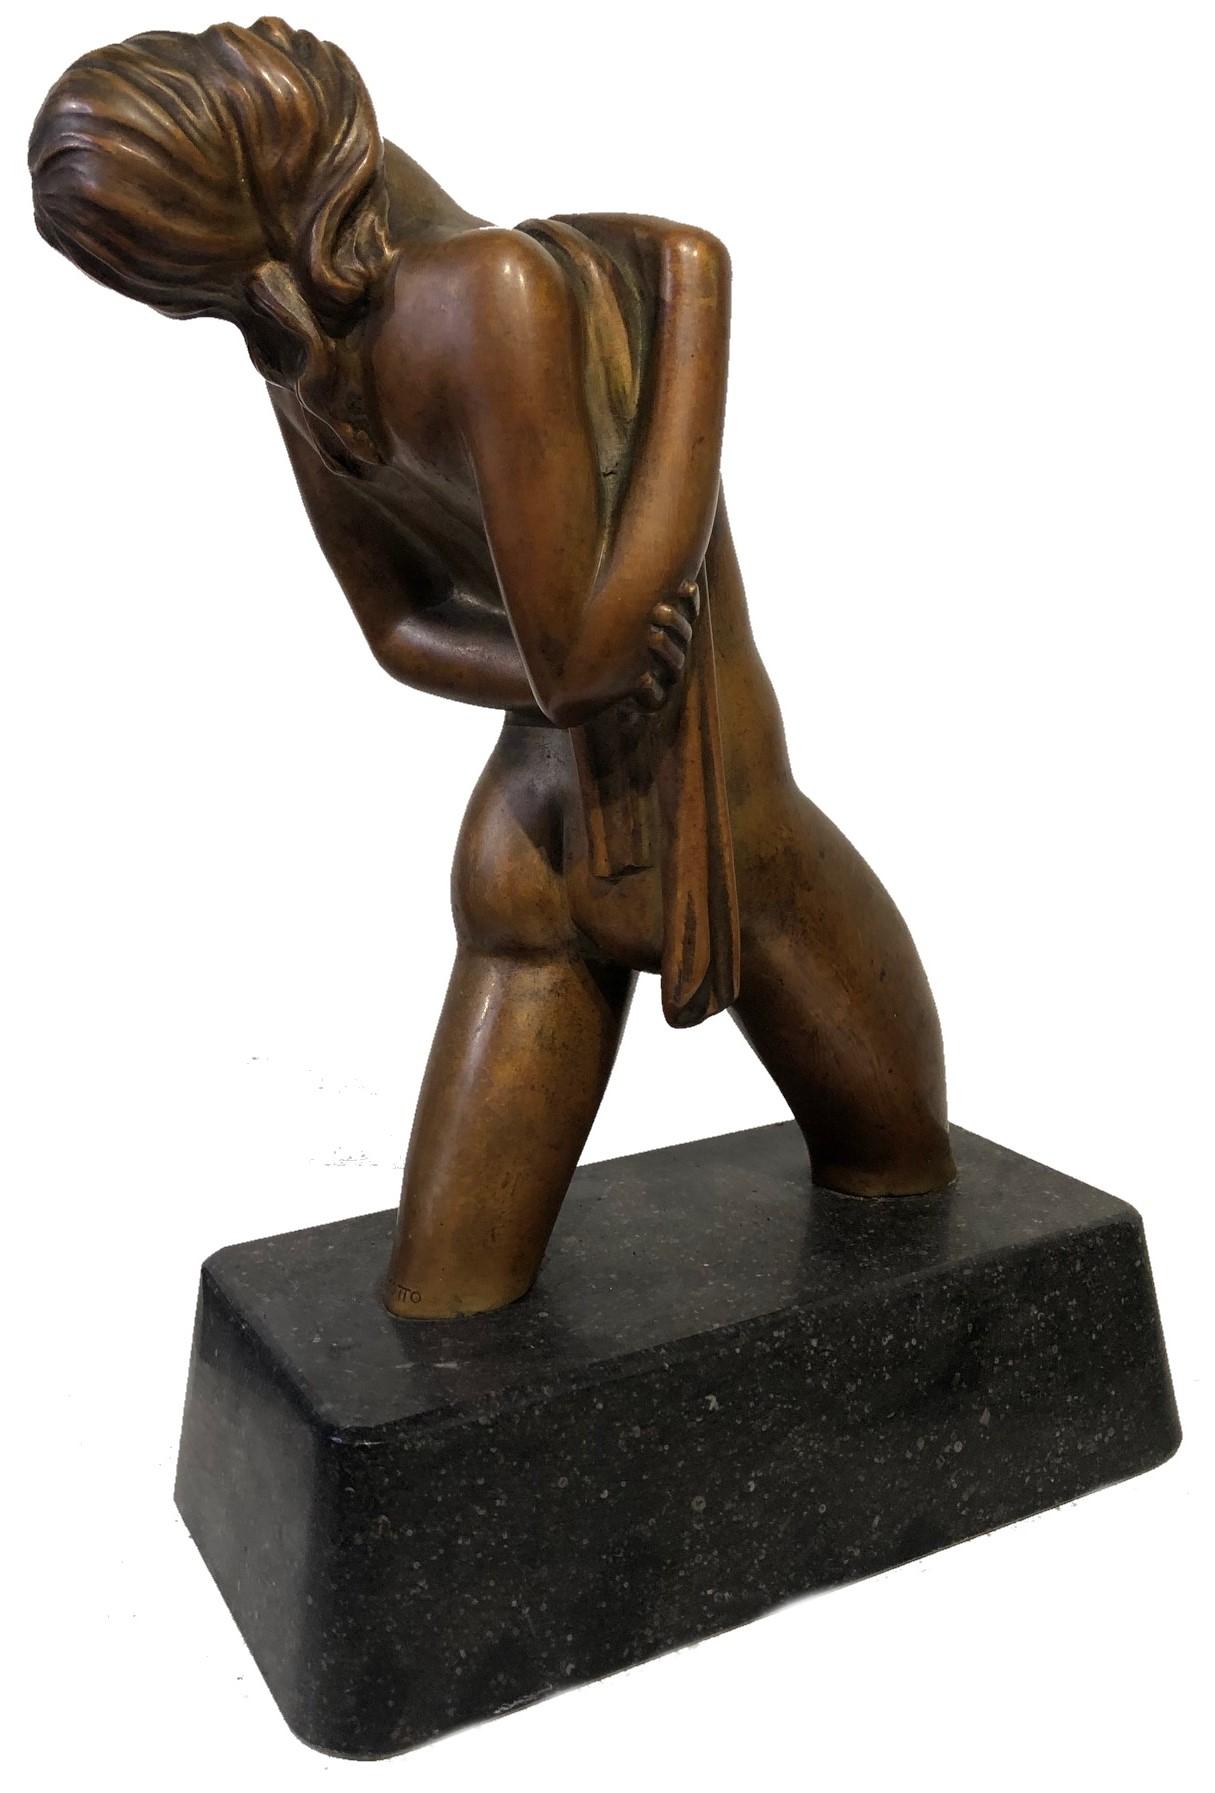 American Art Deco Female Nude Bronze Sculpture by Joseph C. Motto, ca. 1920s  For Sale 1